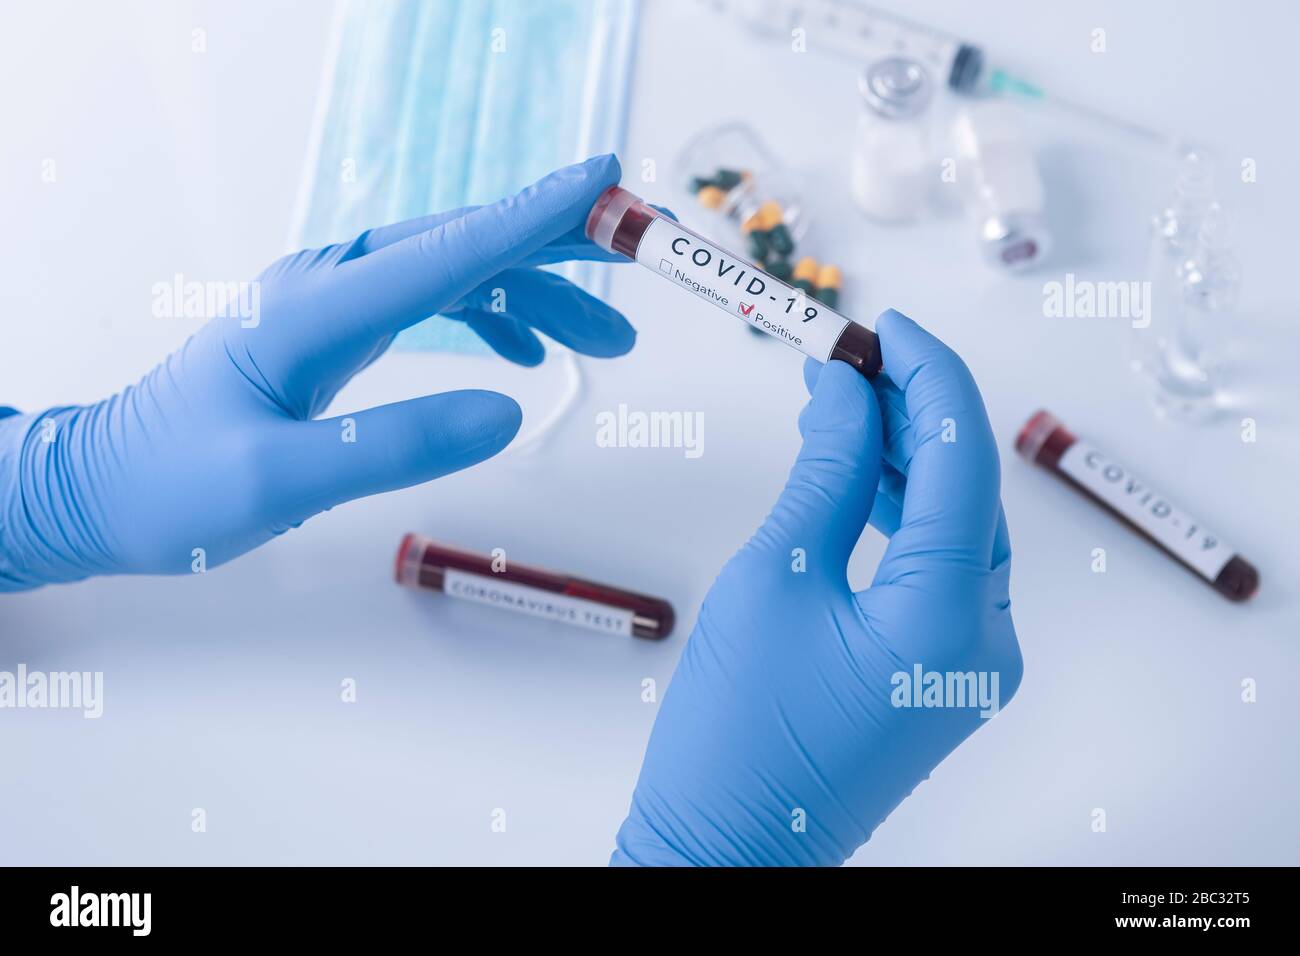 Mains d'analyste avec gants de protection contenant du sang de test de COVID 19 Coronavirus. Test de virus et concept de recherche Banque D'Images